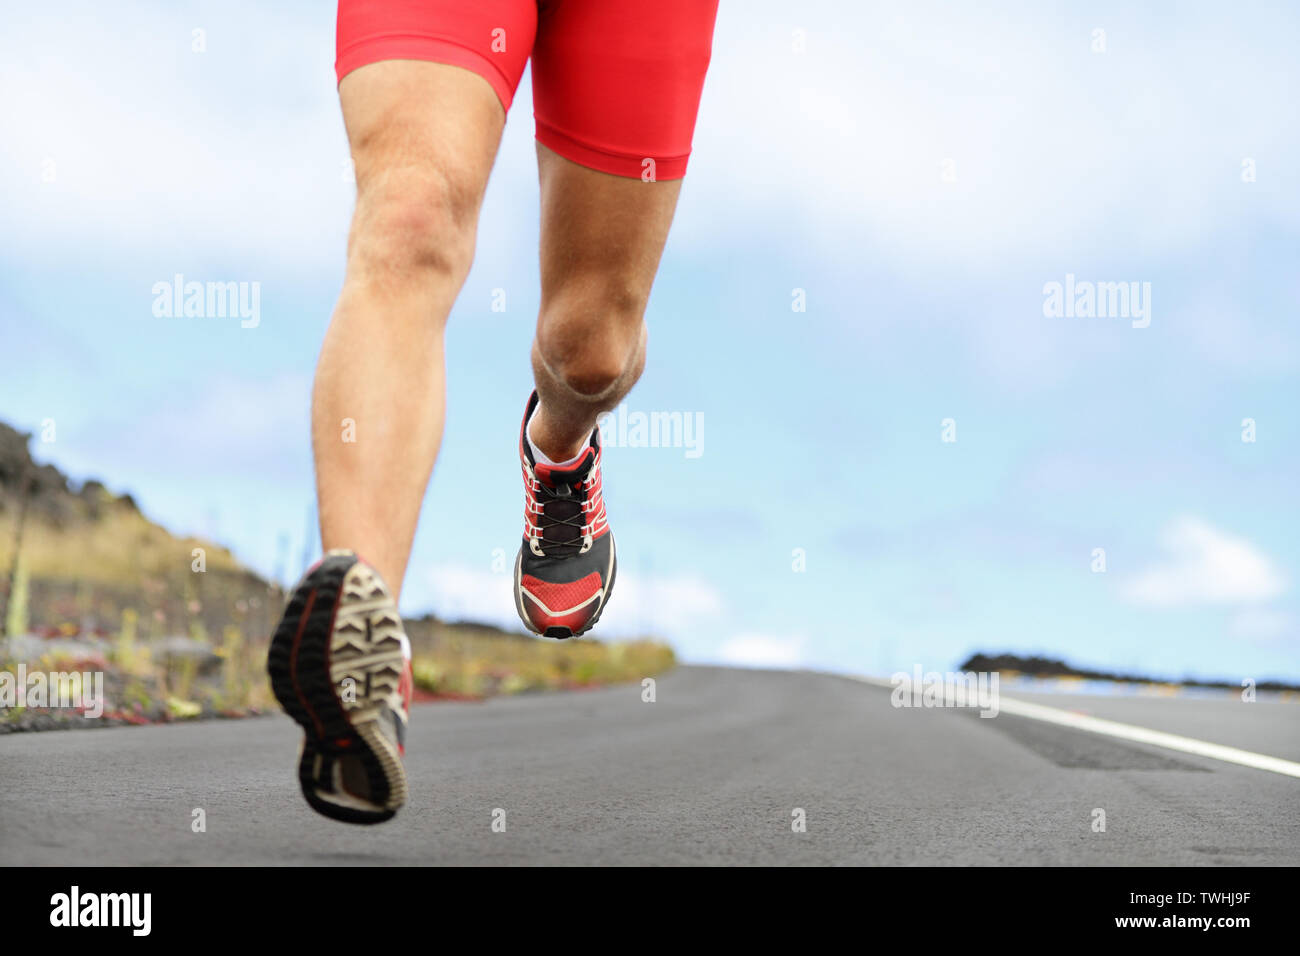 Laufsport Schuhe und Beine. Mann runner Beine und Schuhe in Aktion auf der Straße draußen bei Sonnenuntergang. Männliche Athlet Modell. Stockfoto